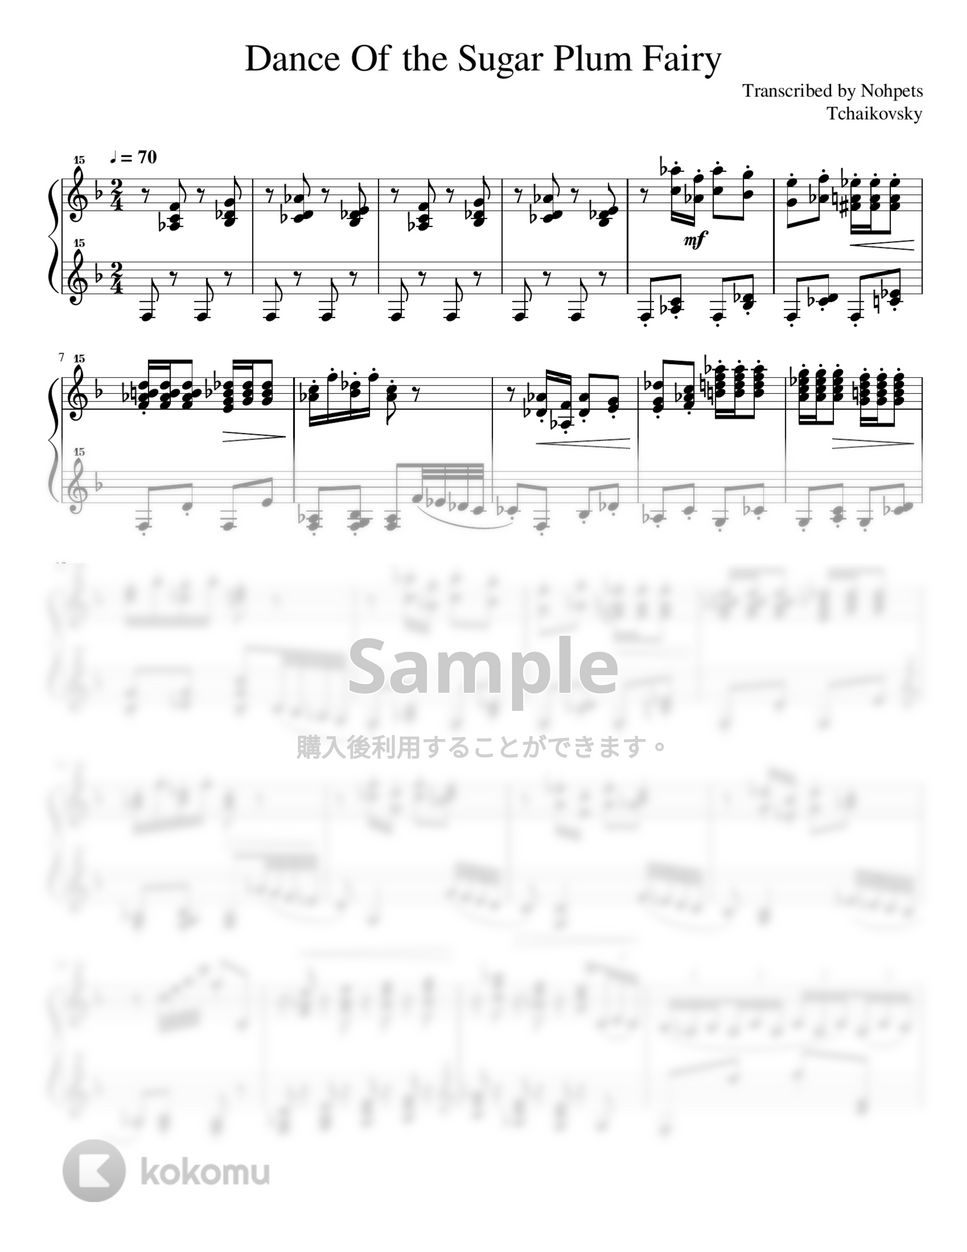 チャイコフスキー - 金平糖の踊り くるみ割り人形 (トイピアノ / クラシック / 32鍵盤) by 川西三裕